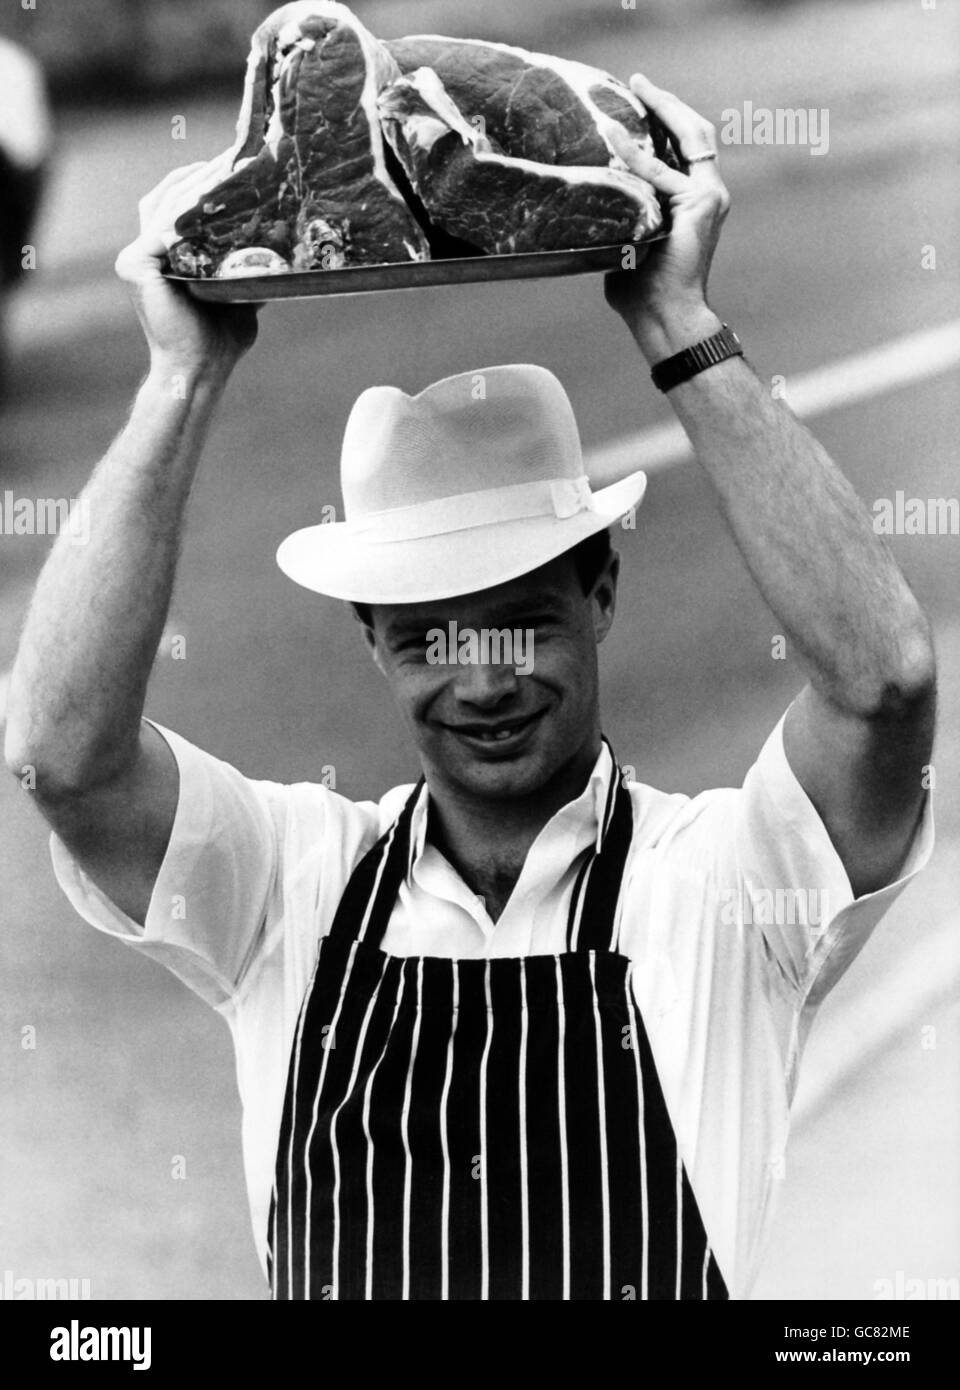 Yorkshire Pace Bowler Paul Jarvis will etwas Rindfleisch geben In seine Bewerbung um einen englischen Platz Stockfoto